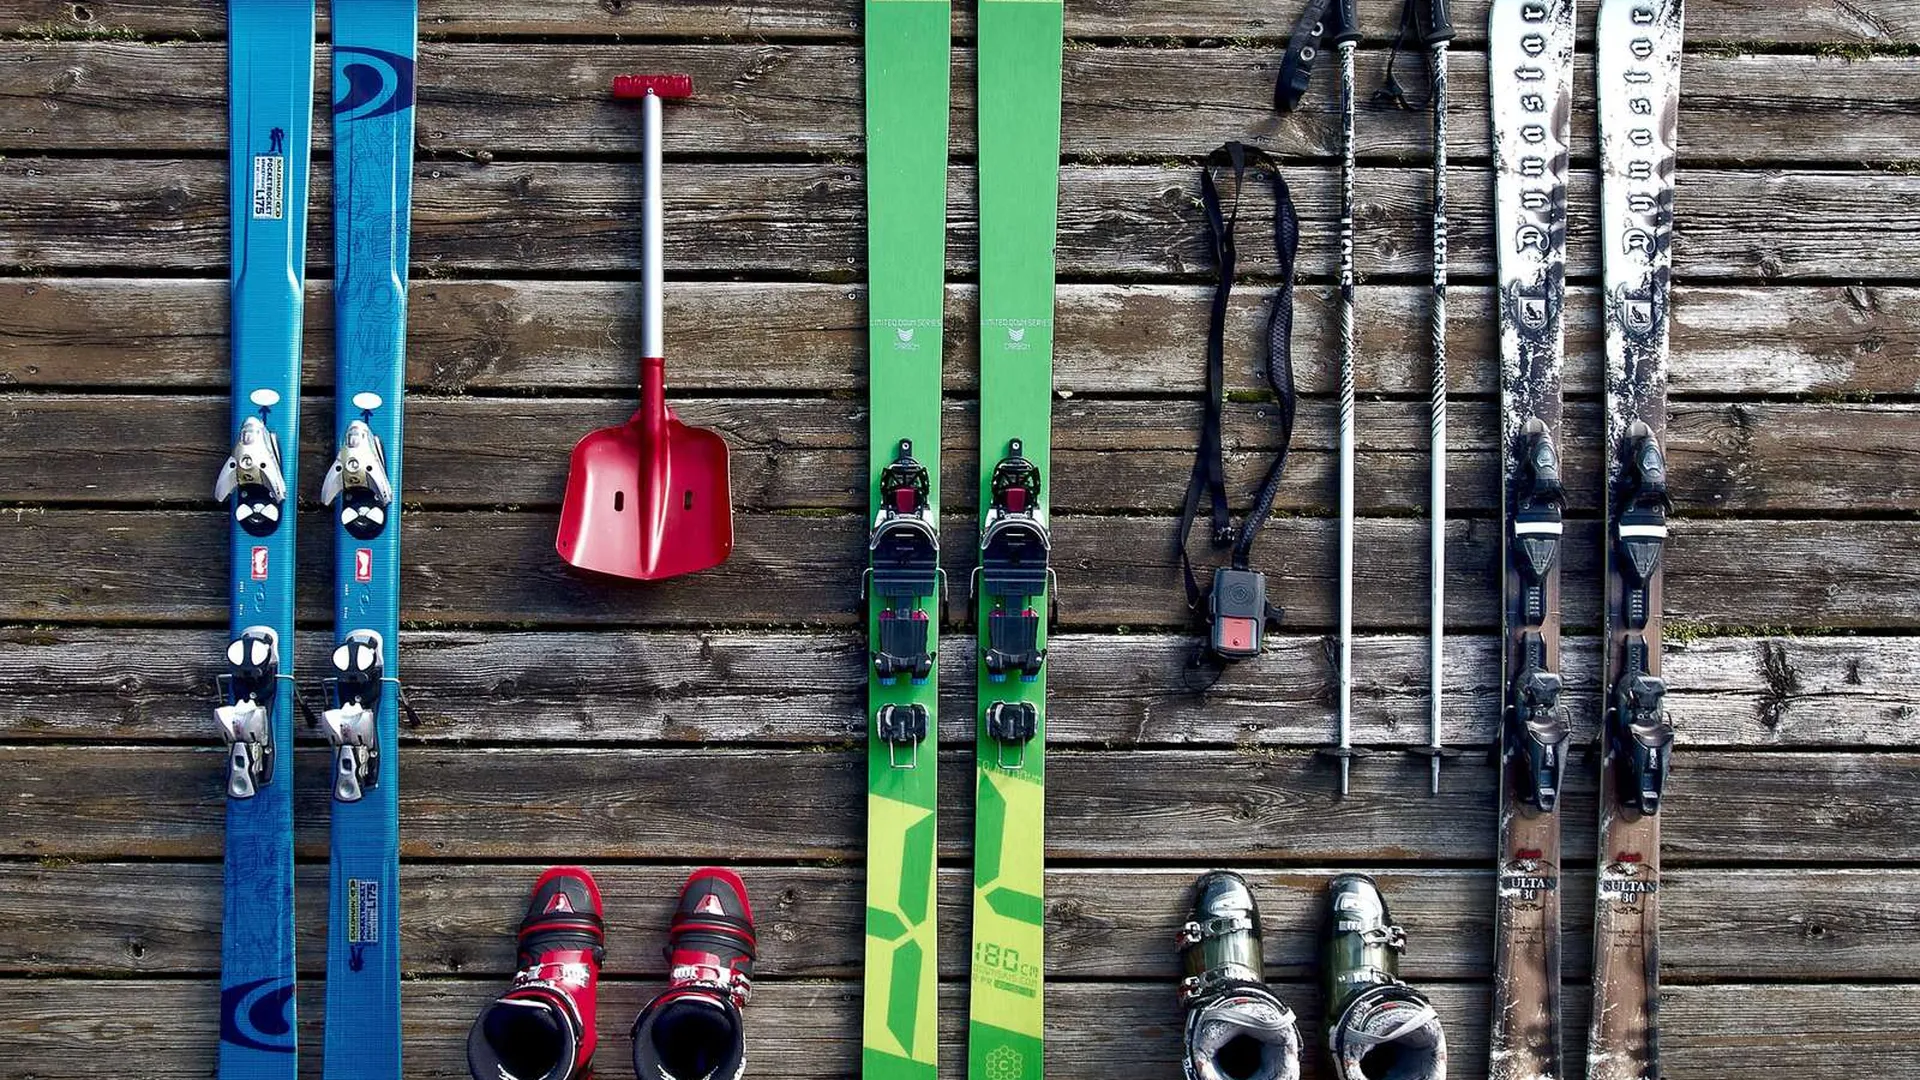 Сноуборды лыжи и палки перевозятся. Спортивные лыжи. Лыжный инвентарь. Горнолыжные лыжи. Горнолыжный спорт инвентарь.